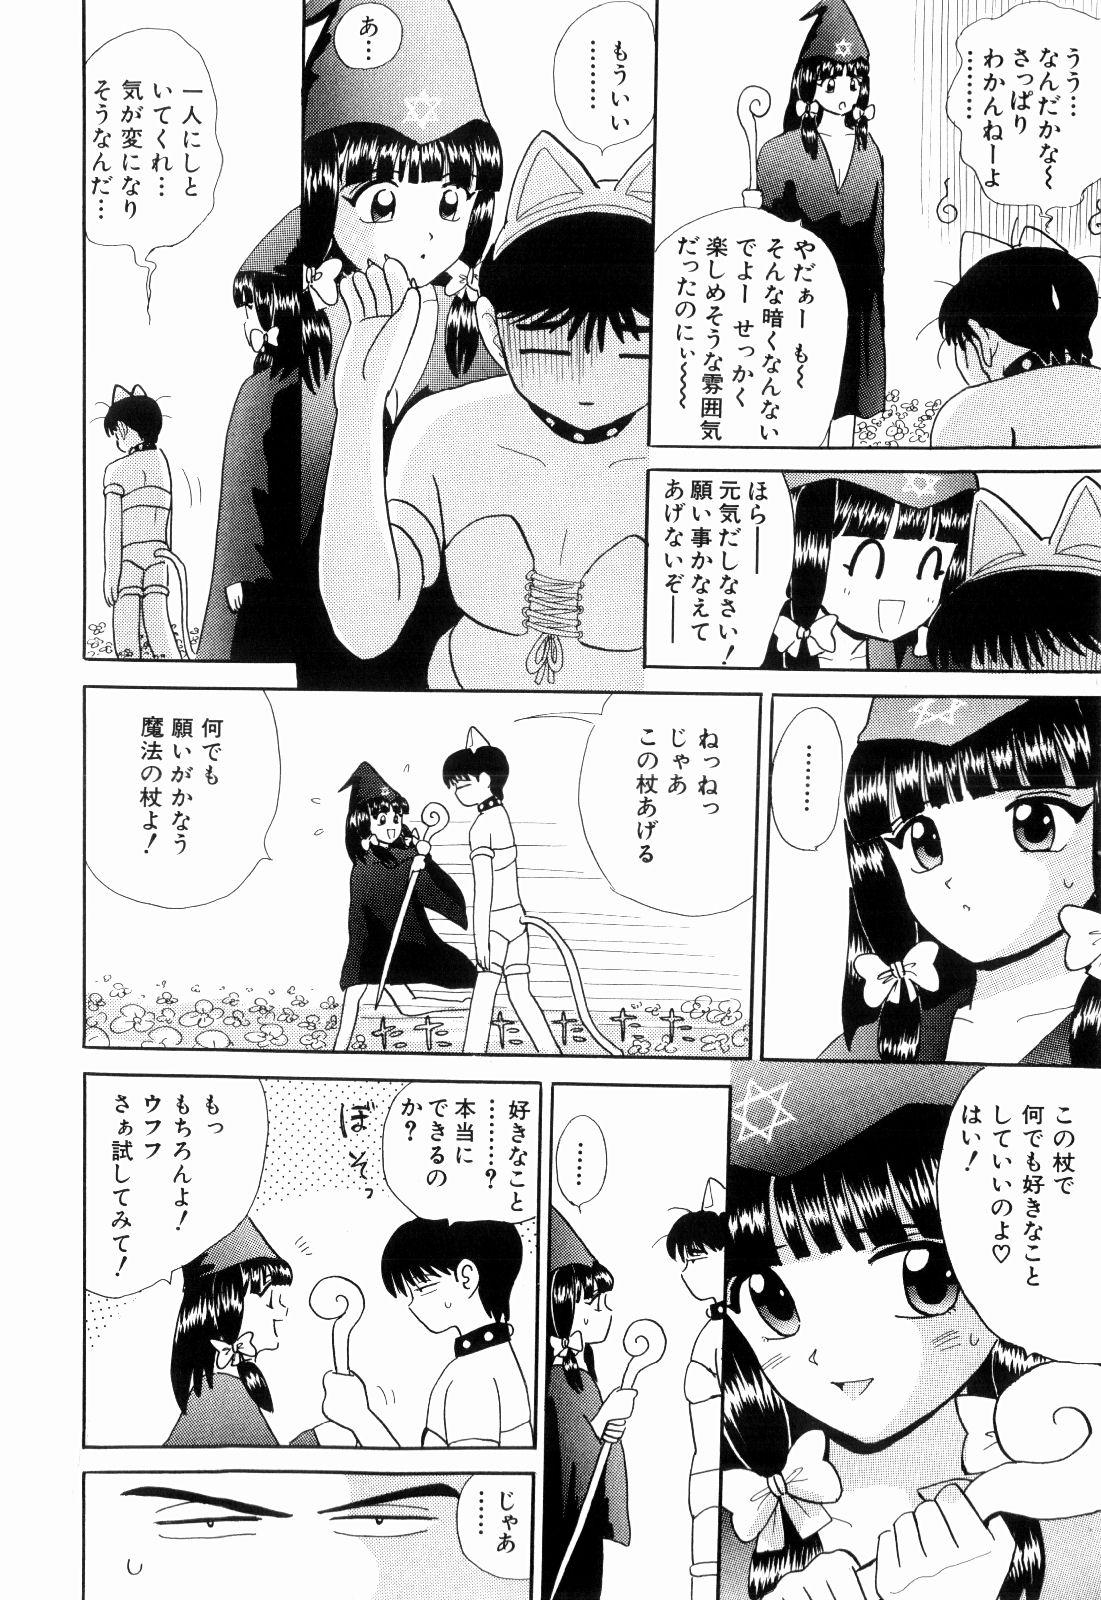 Bang Bros Kenjiro Kakimoto - Futari Kurashi 11 Fucking Sex - Page 8